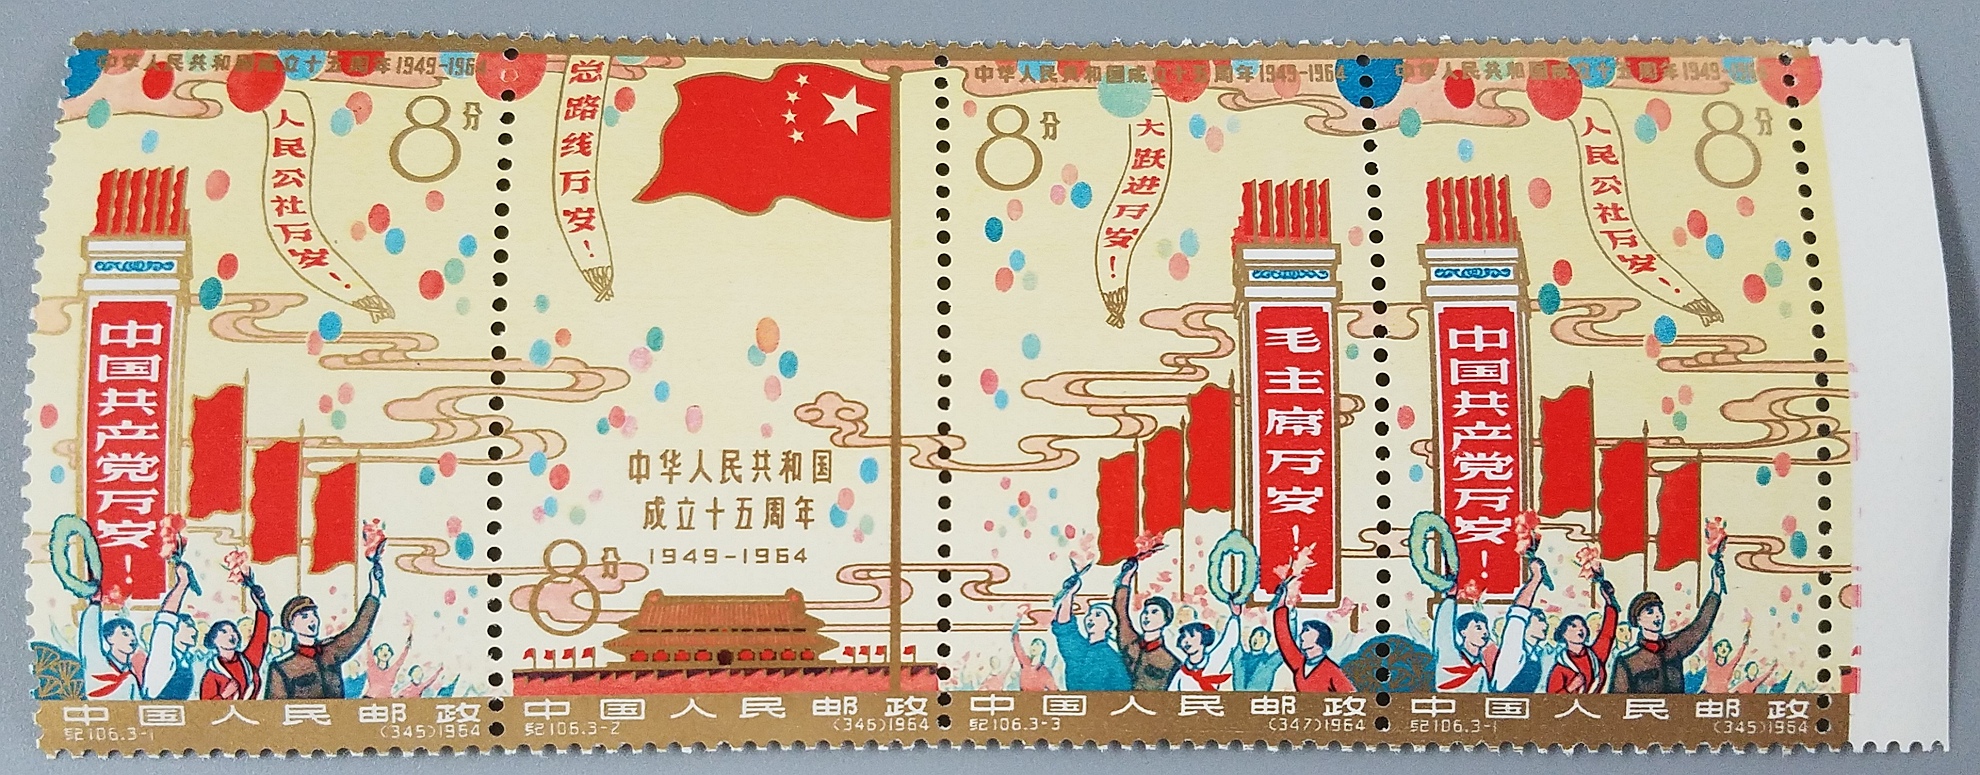 オークション,中国切手 紀106 中華人民共和国開国15周年 未使用 切手